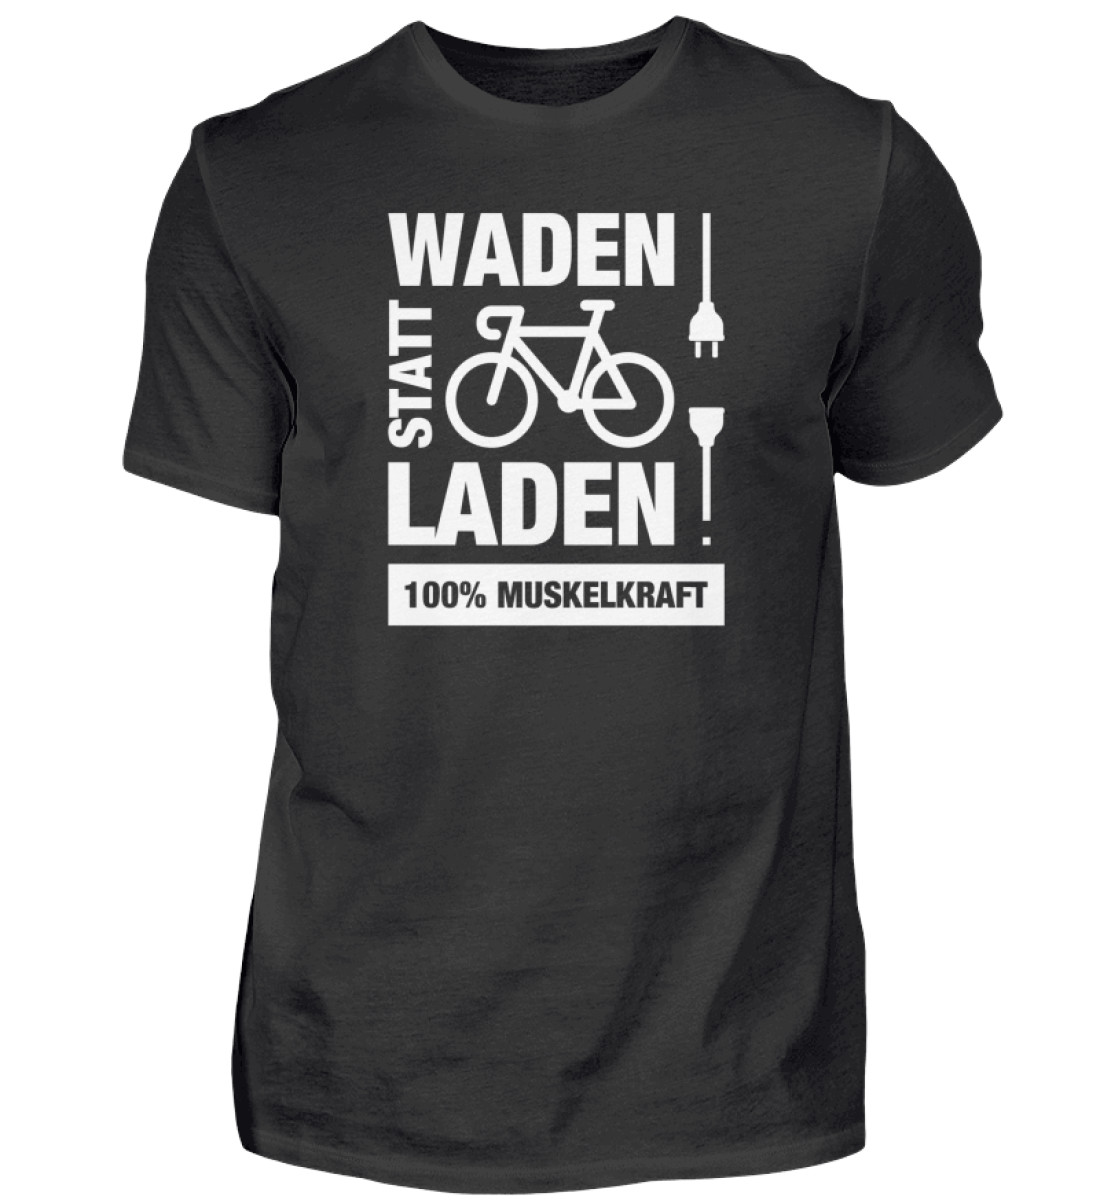 Waden Statt Laden - Herren Shirt-16